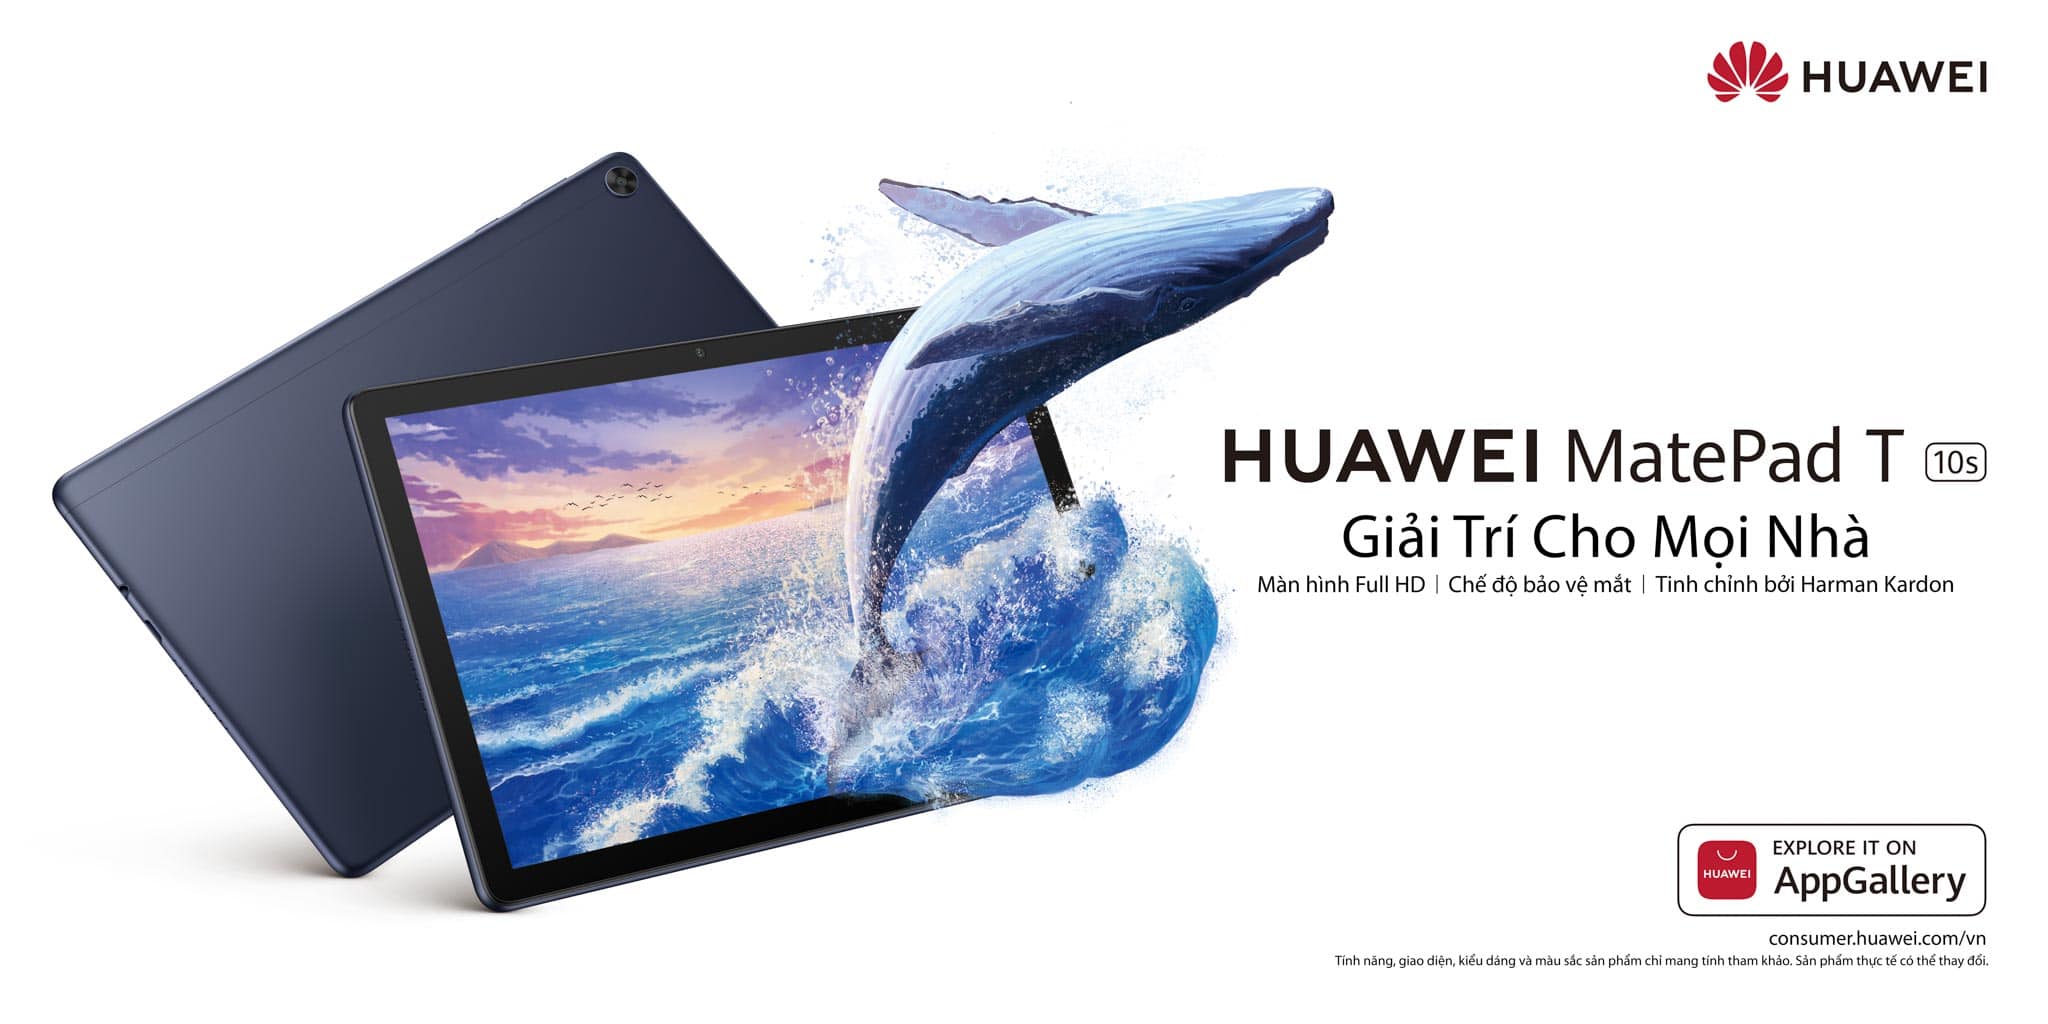 Huawei giới thiệu bộ đôi máy tính bảng MatePad và MatePad T10s tại Việt Nam, bán độc quyền tại Thế Giới Di Động